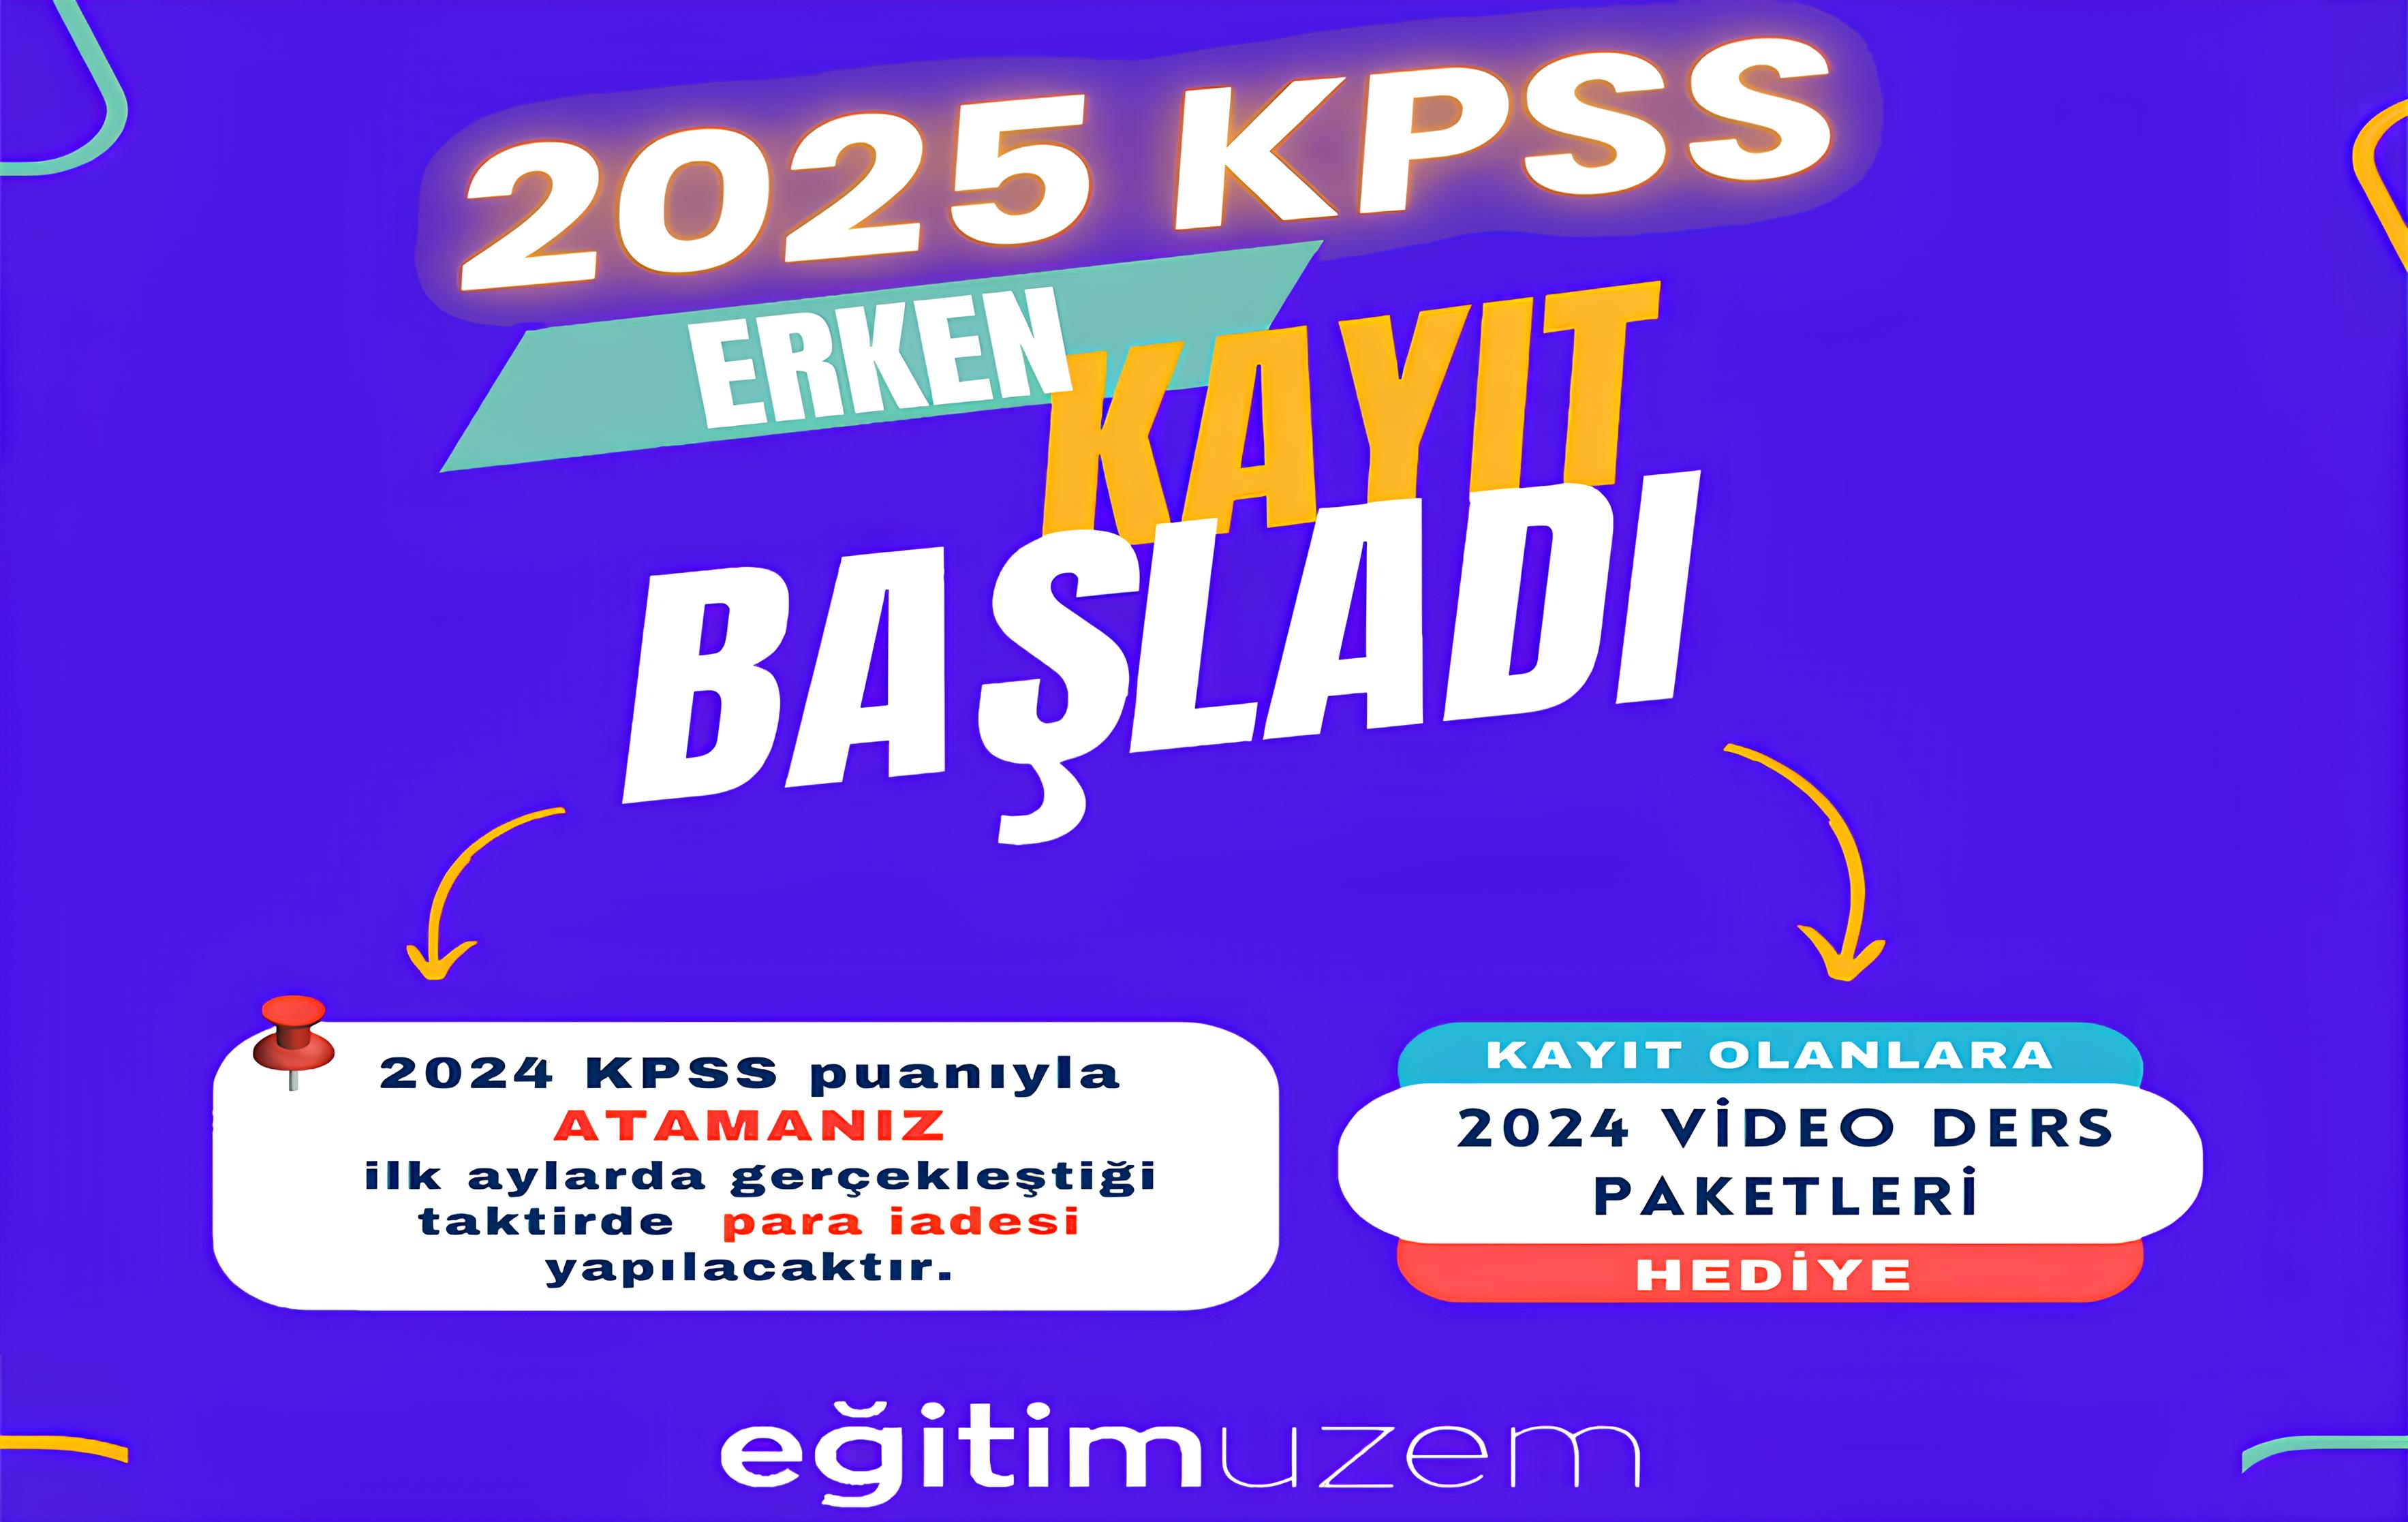 2025 KPSS Erken Kayıt Fırsatı